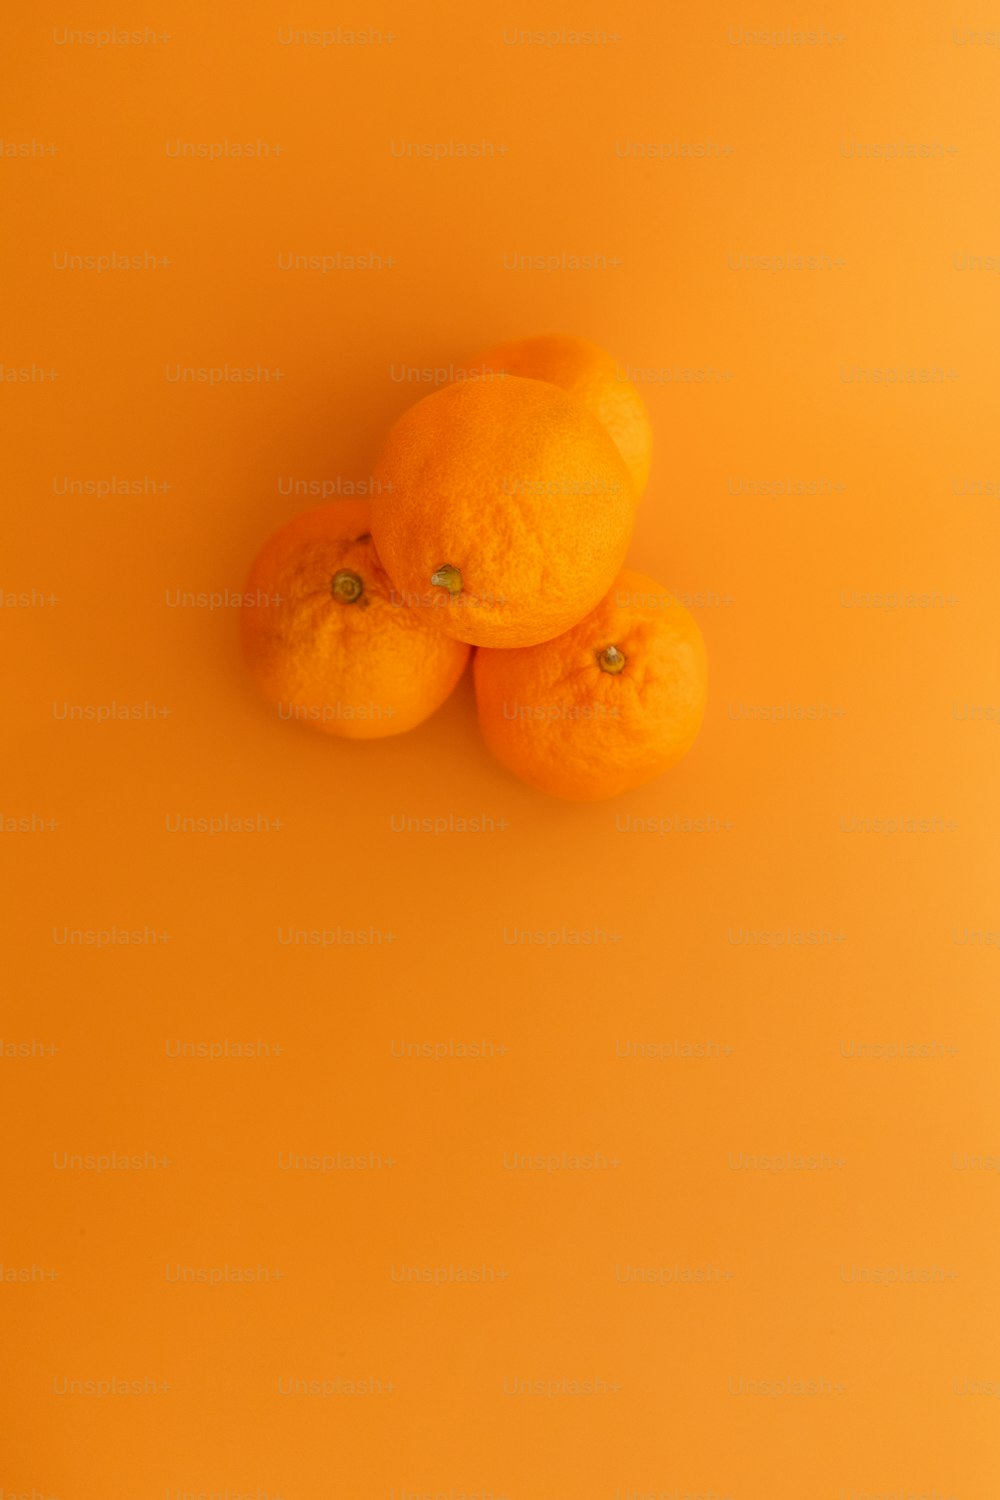 黄色い表面の上に座っている3つのオレンジ